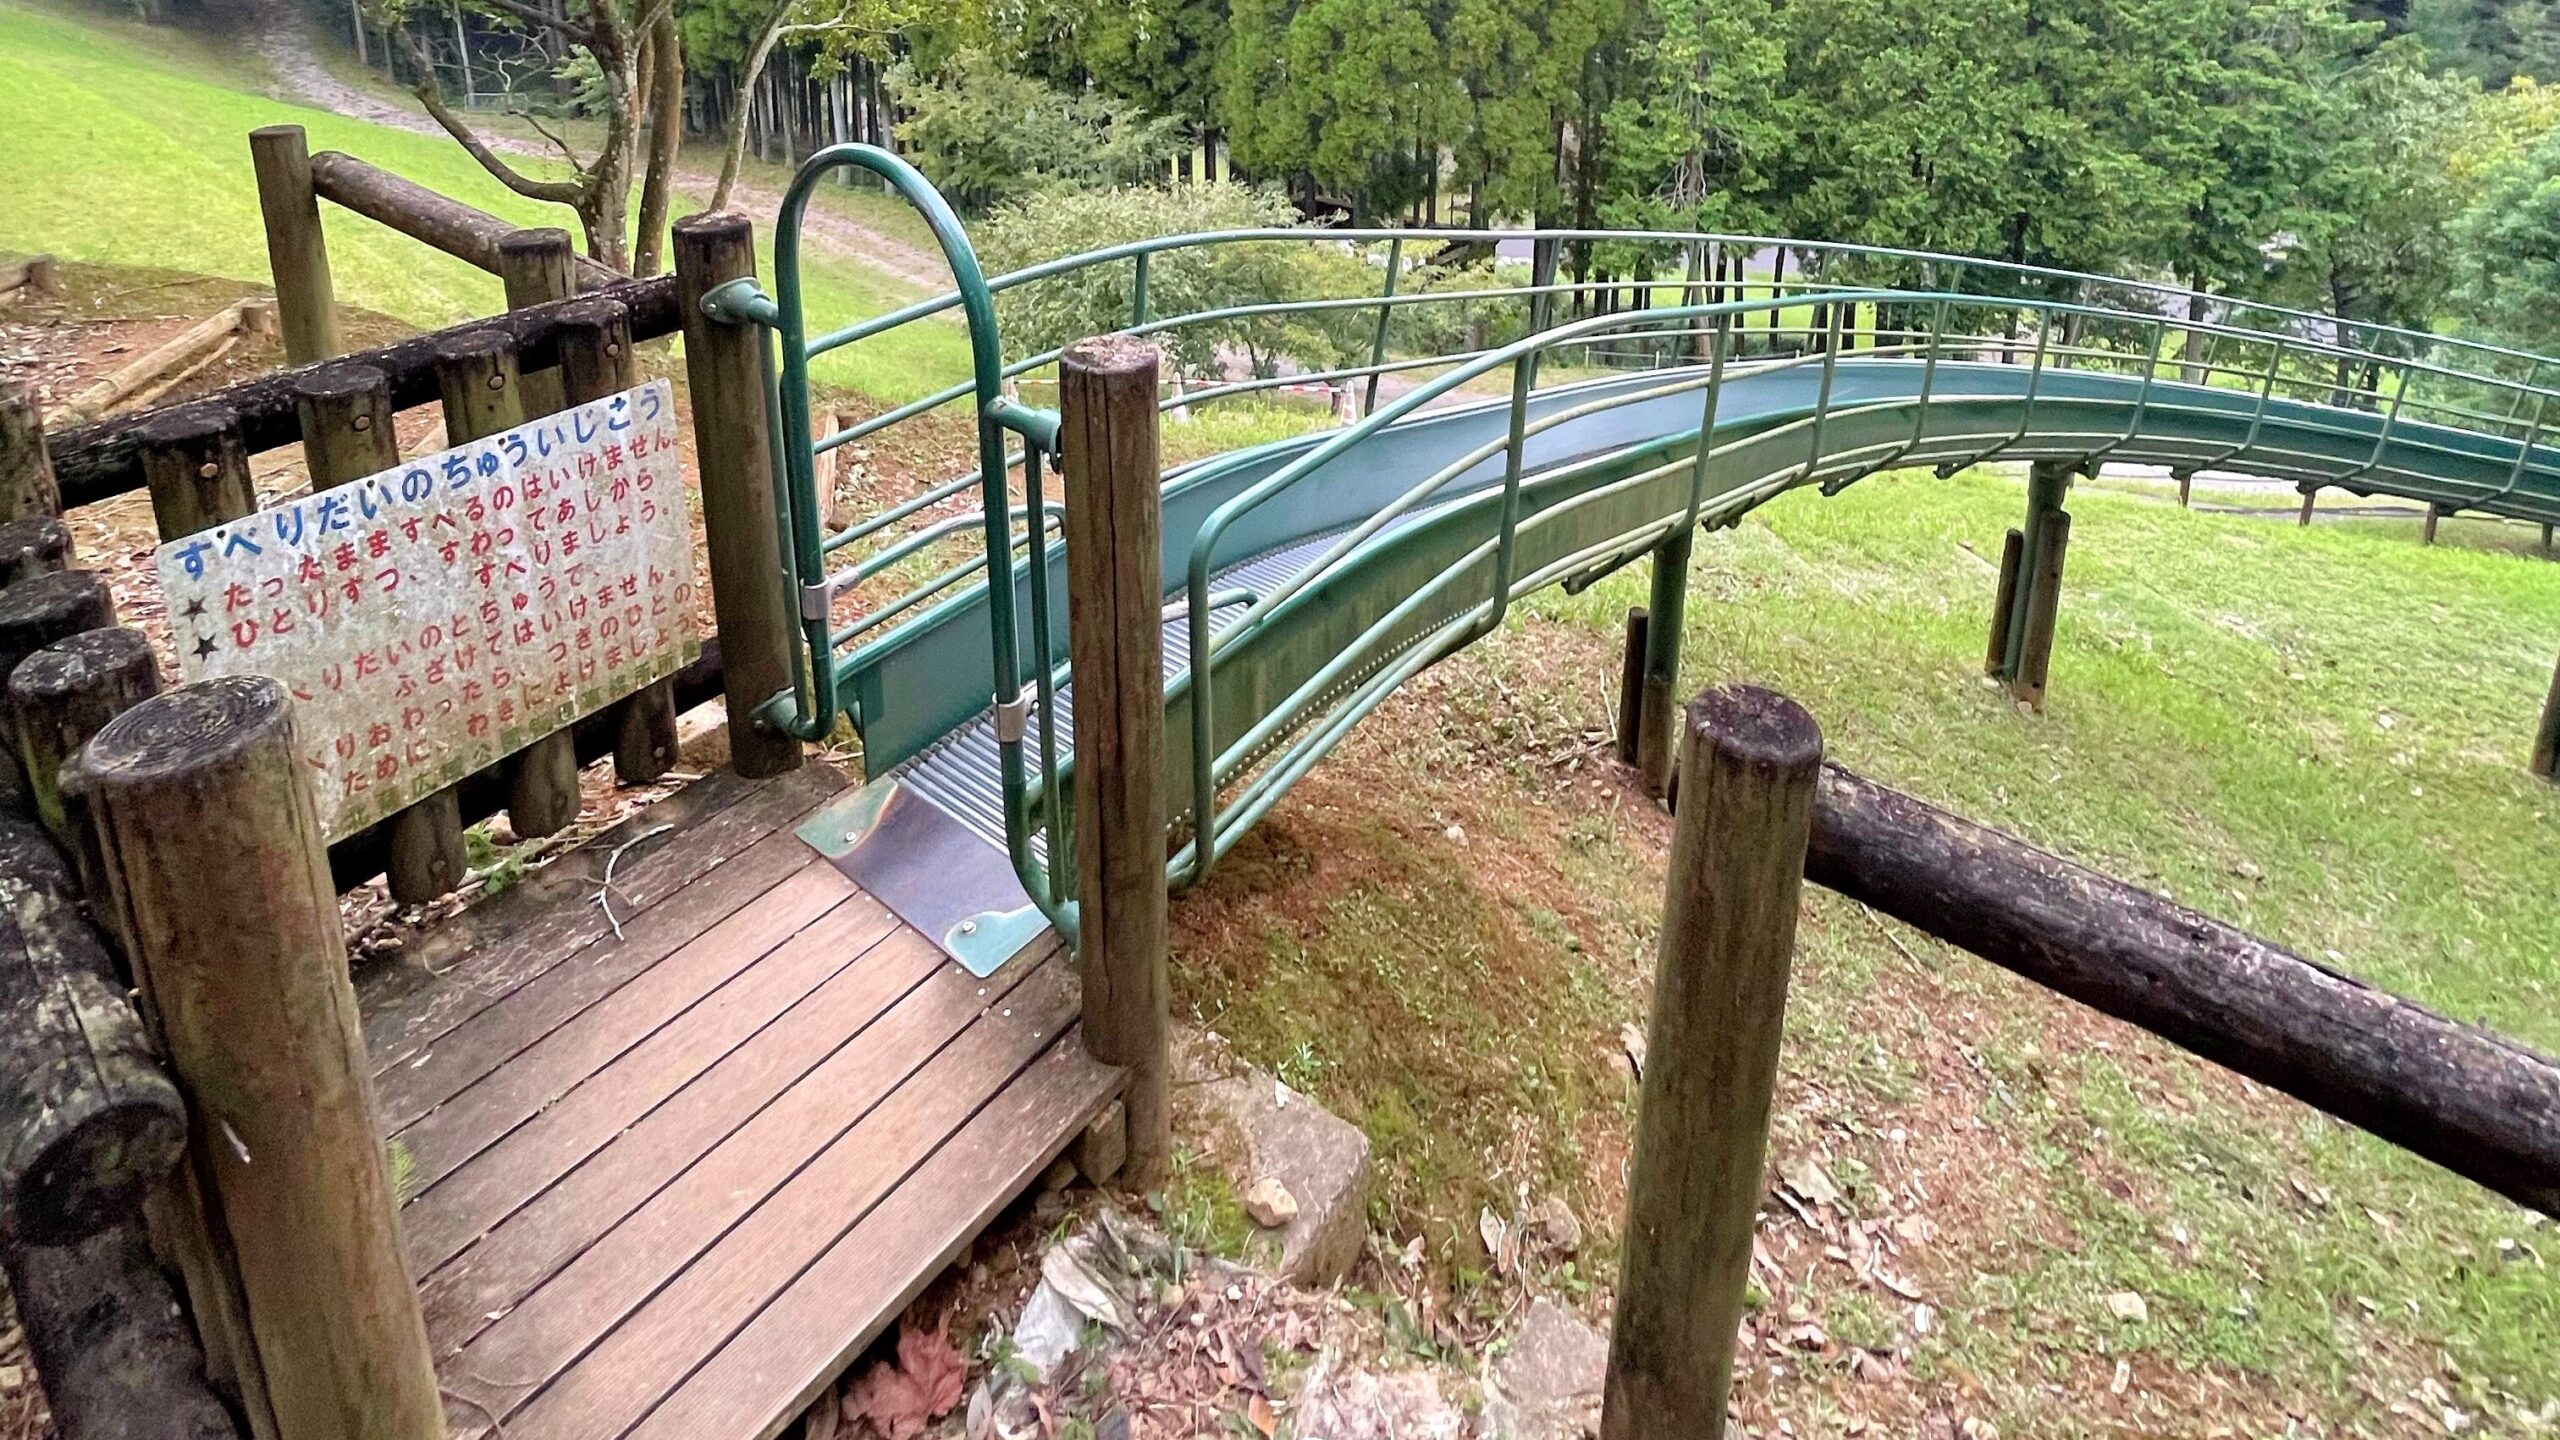 鹿児島県立北薩広域公園内にある大型冒険遊具の滑り台